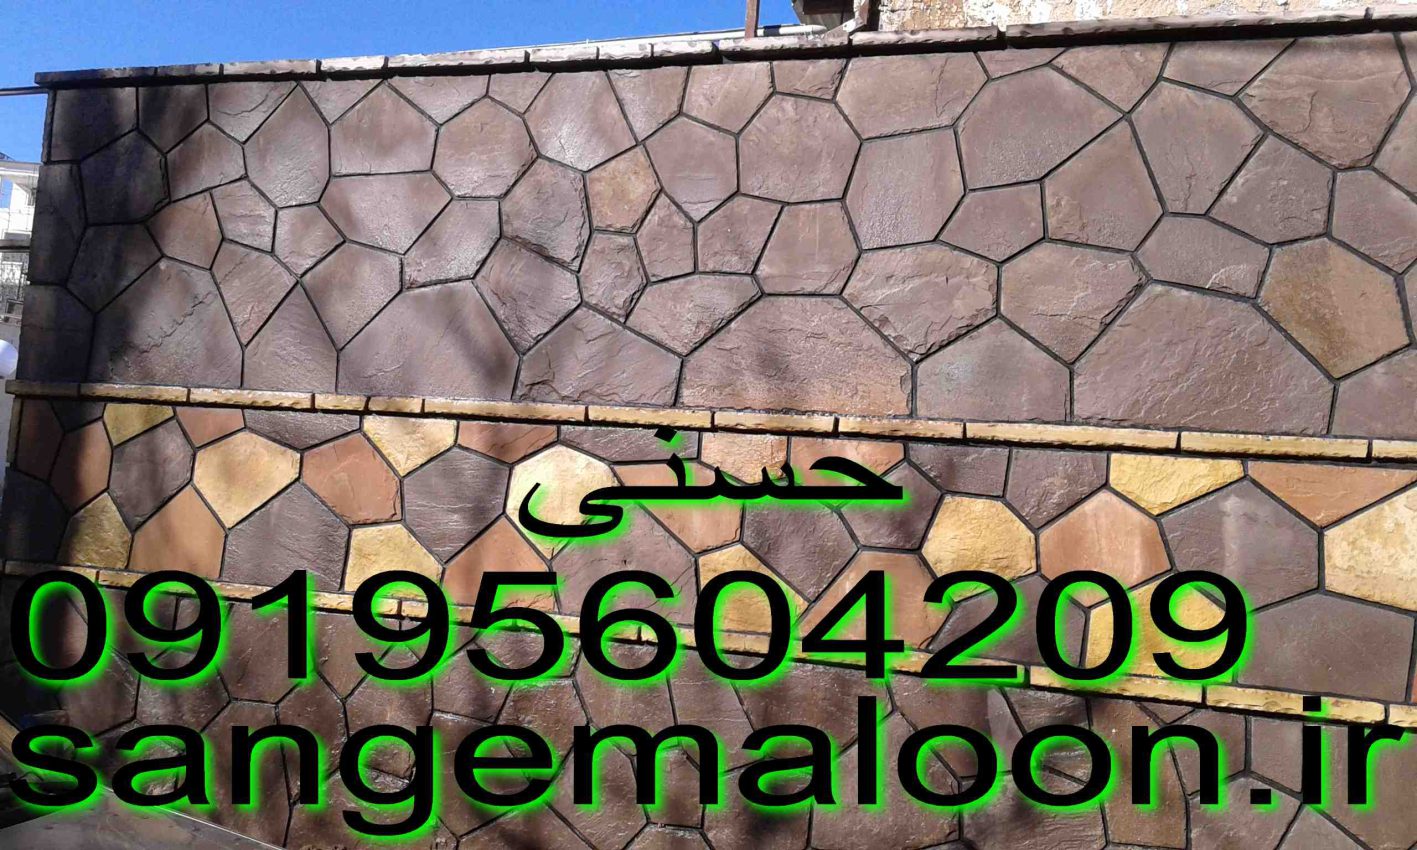 سنگ مالون افزایش زیبایی و ارزش خانه با سنگ لاشه مالون برای کف و دیوار